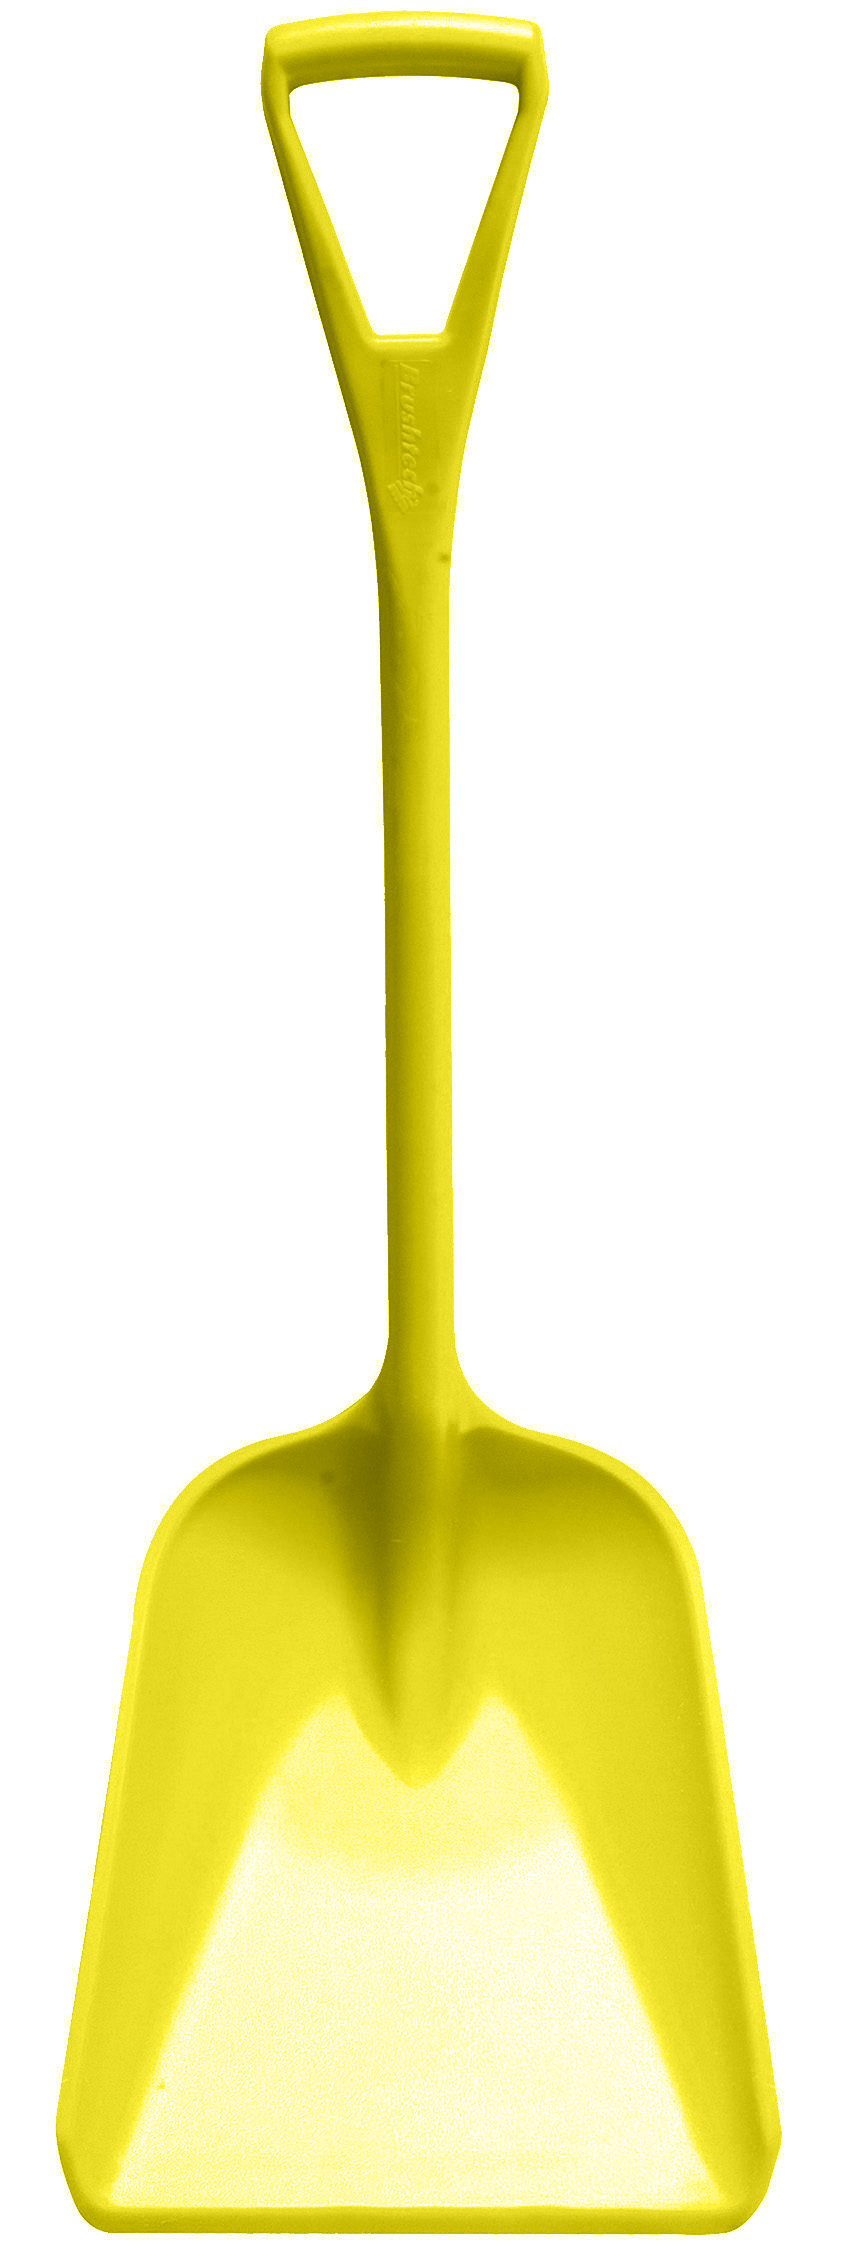 Лопата HACCPER большая, 1070х350 мм, желтая